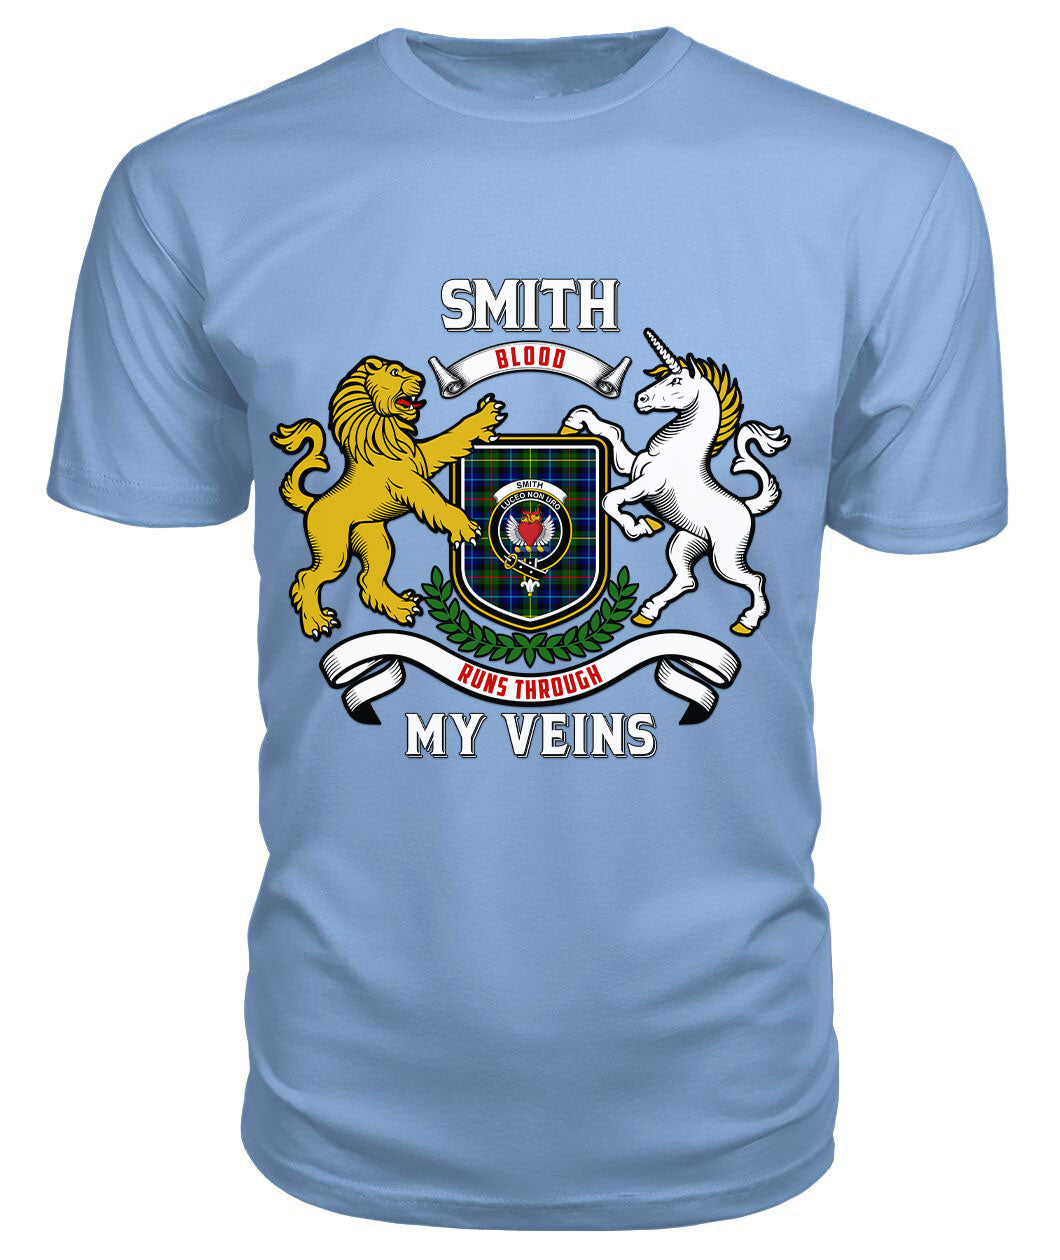 Smith Modern Tartan Crest 2D T-shirt - Blood Runs Through My Veins Style